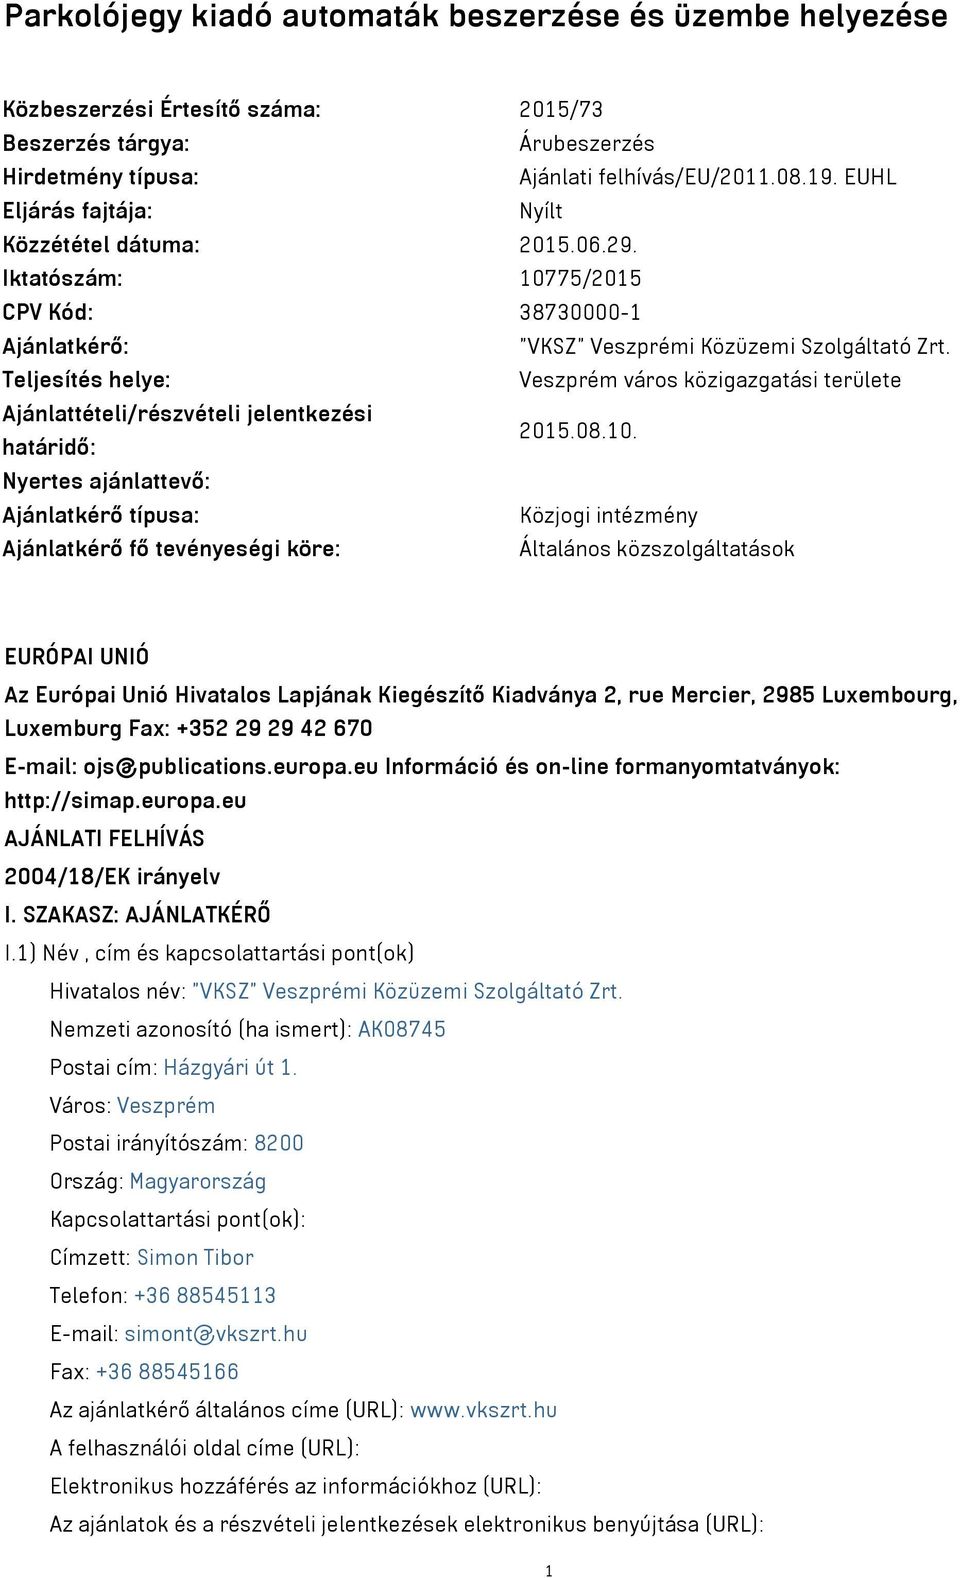 Teljesítés helye: Veszprém város közigazgatási területe Ajánlattételi/részvételi jelentkezési határidő: 2015.08.10.